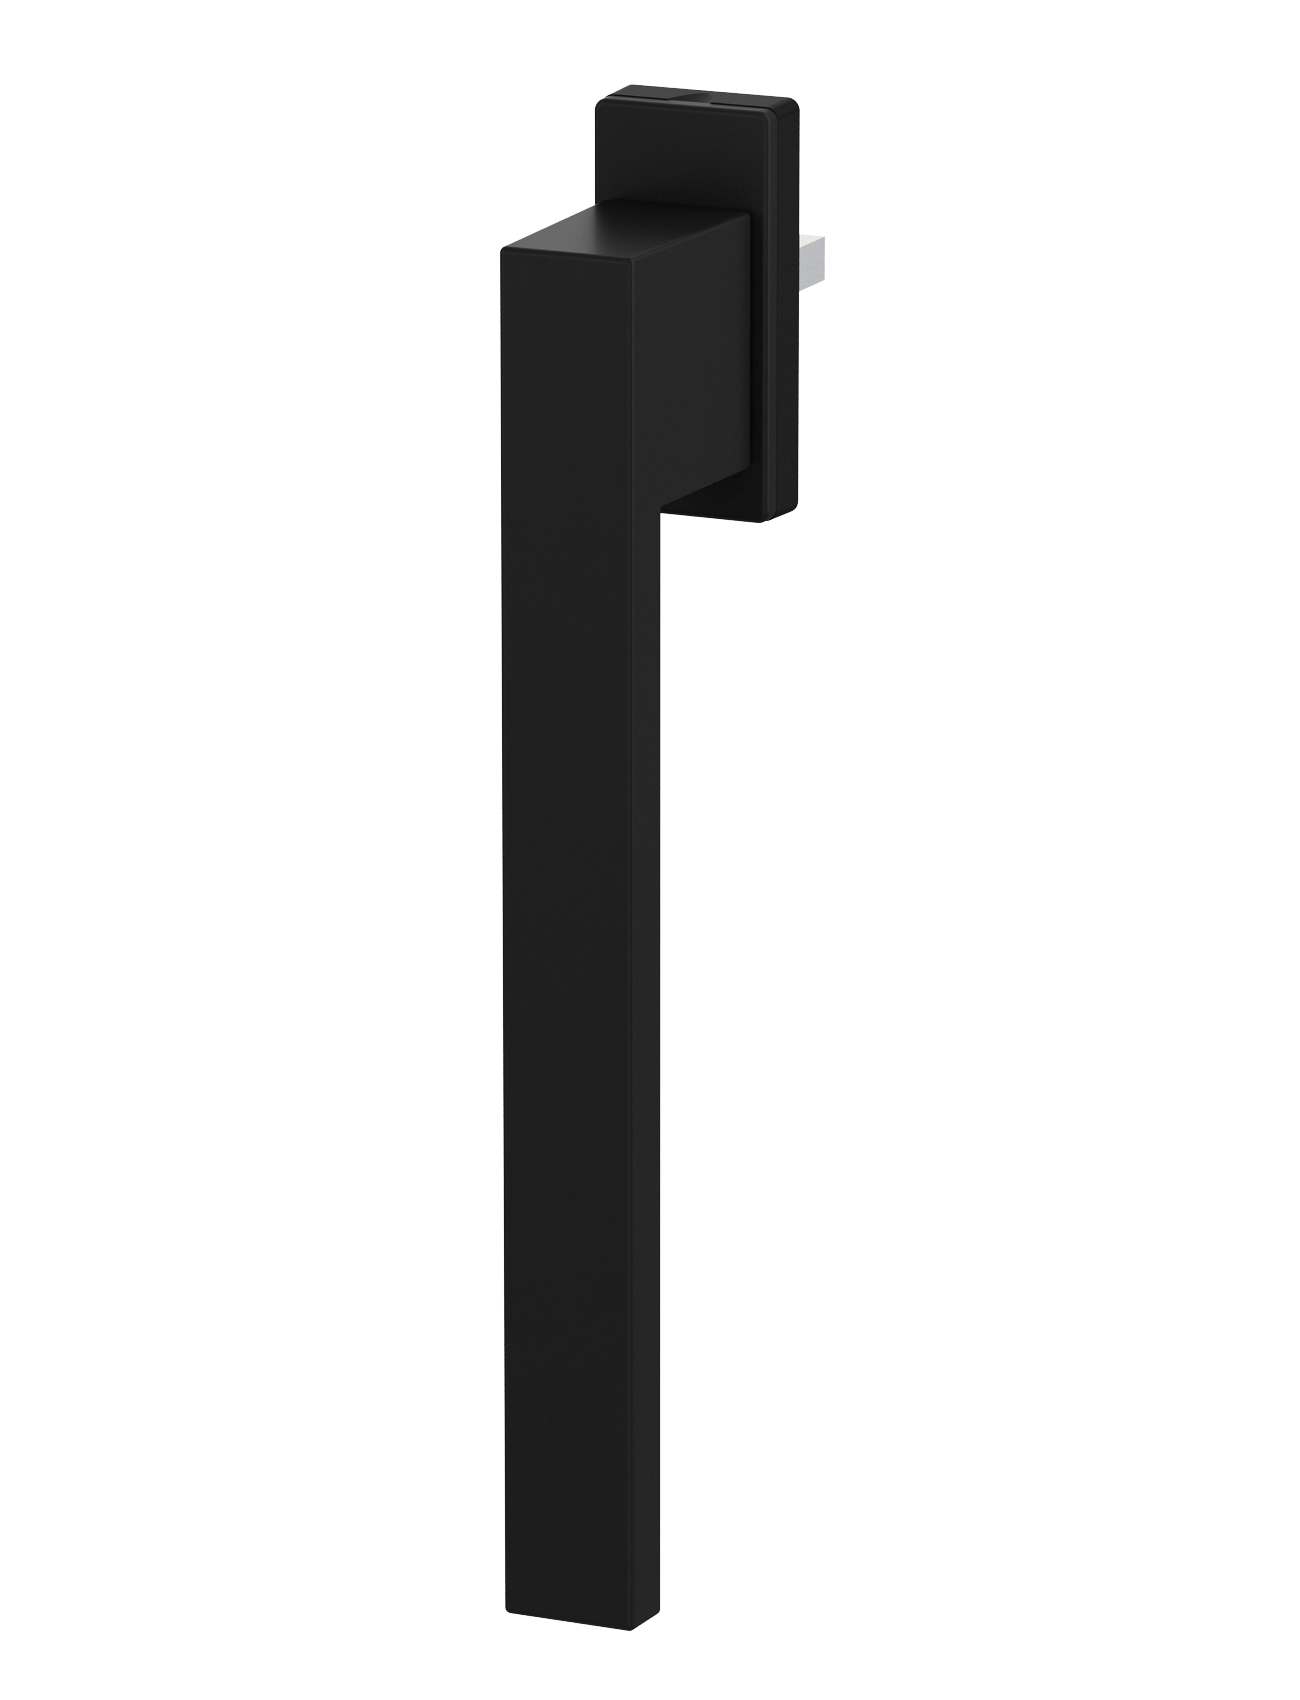 Klika pro PSK DUBLIN Délka čtyřhranu: 45 mm, Barva/Povrchová úprava: Černá RAL 9005/matný povrch